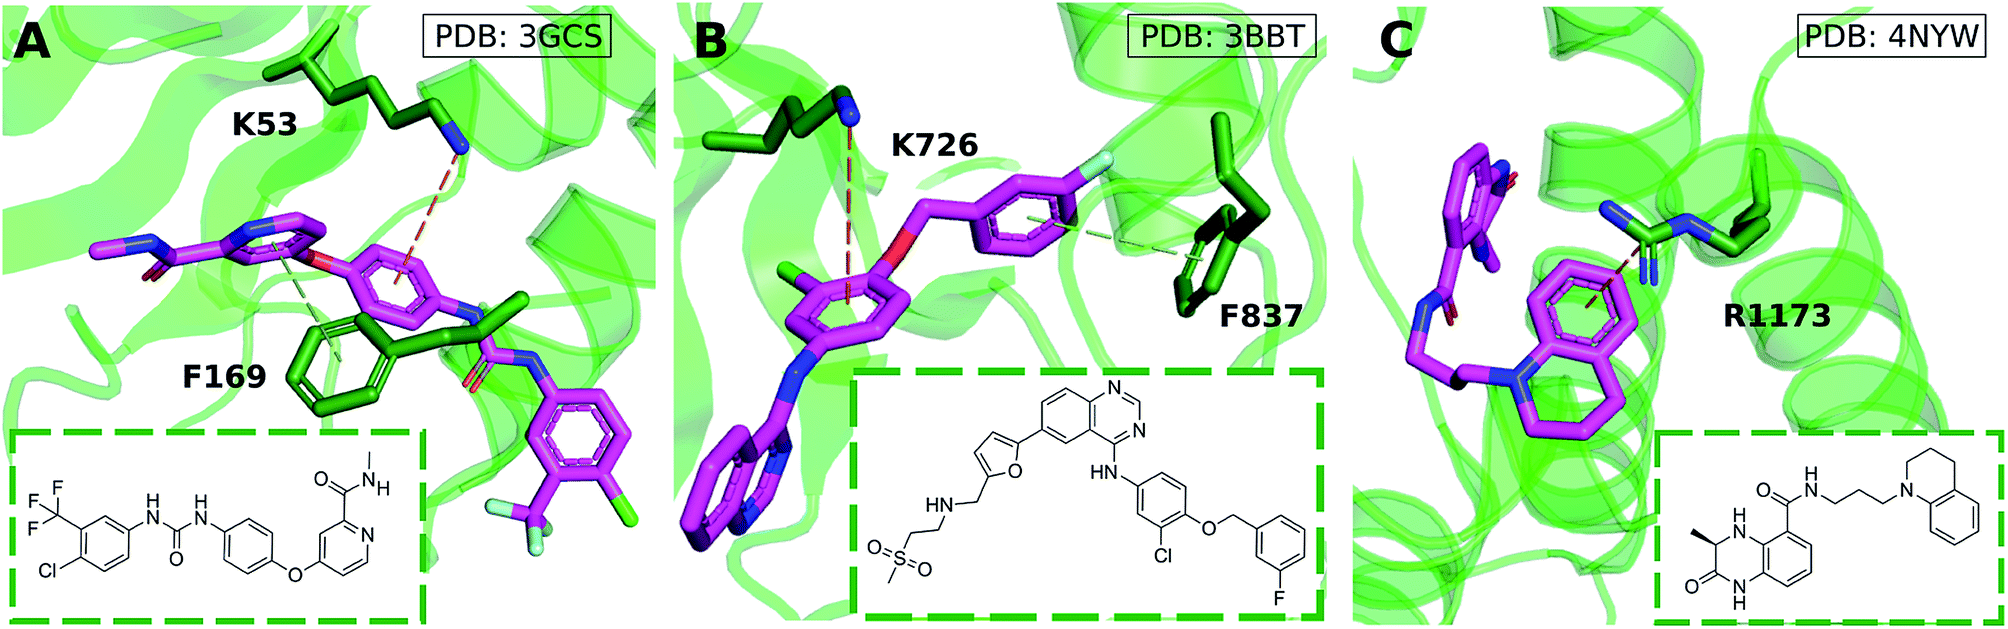 یکی از انواع پیوندهای مهم در ساختار پروتئین CATION-PI